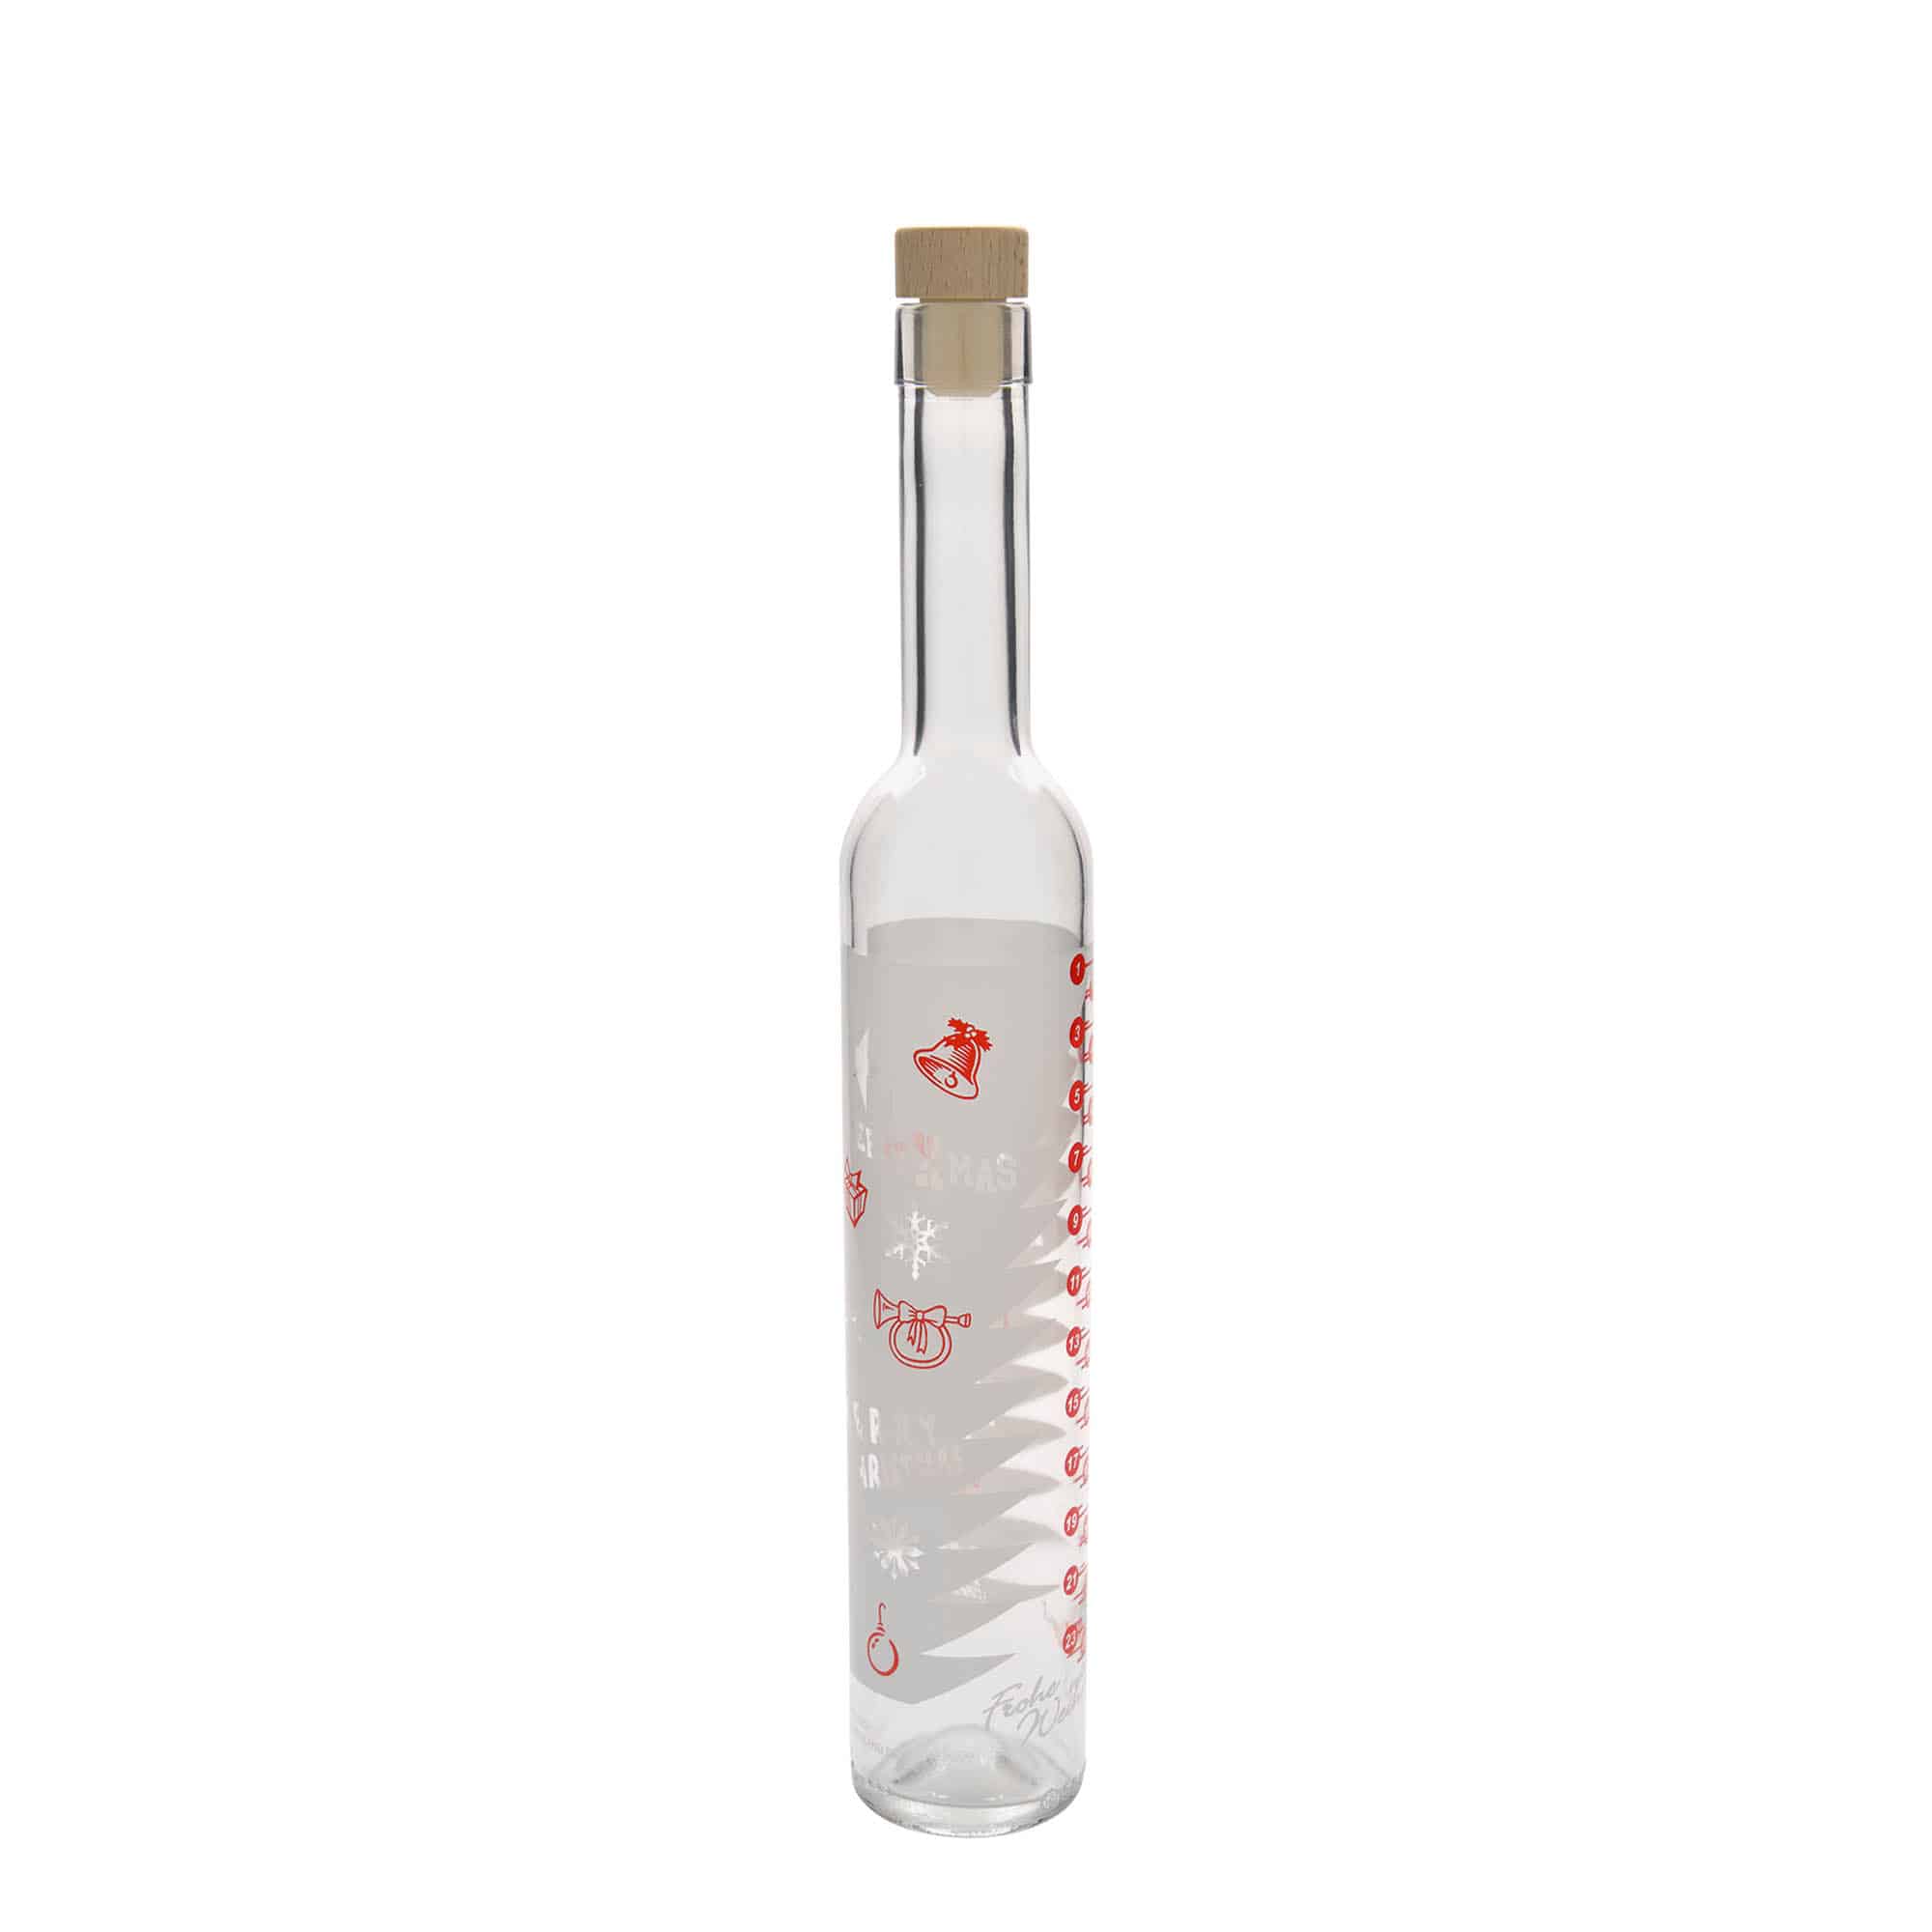 Glazen fles Maximo bedrukt 'Adventskalender', 500 ml, monding: kurk